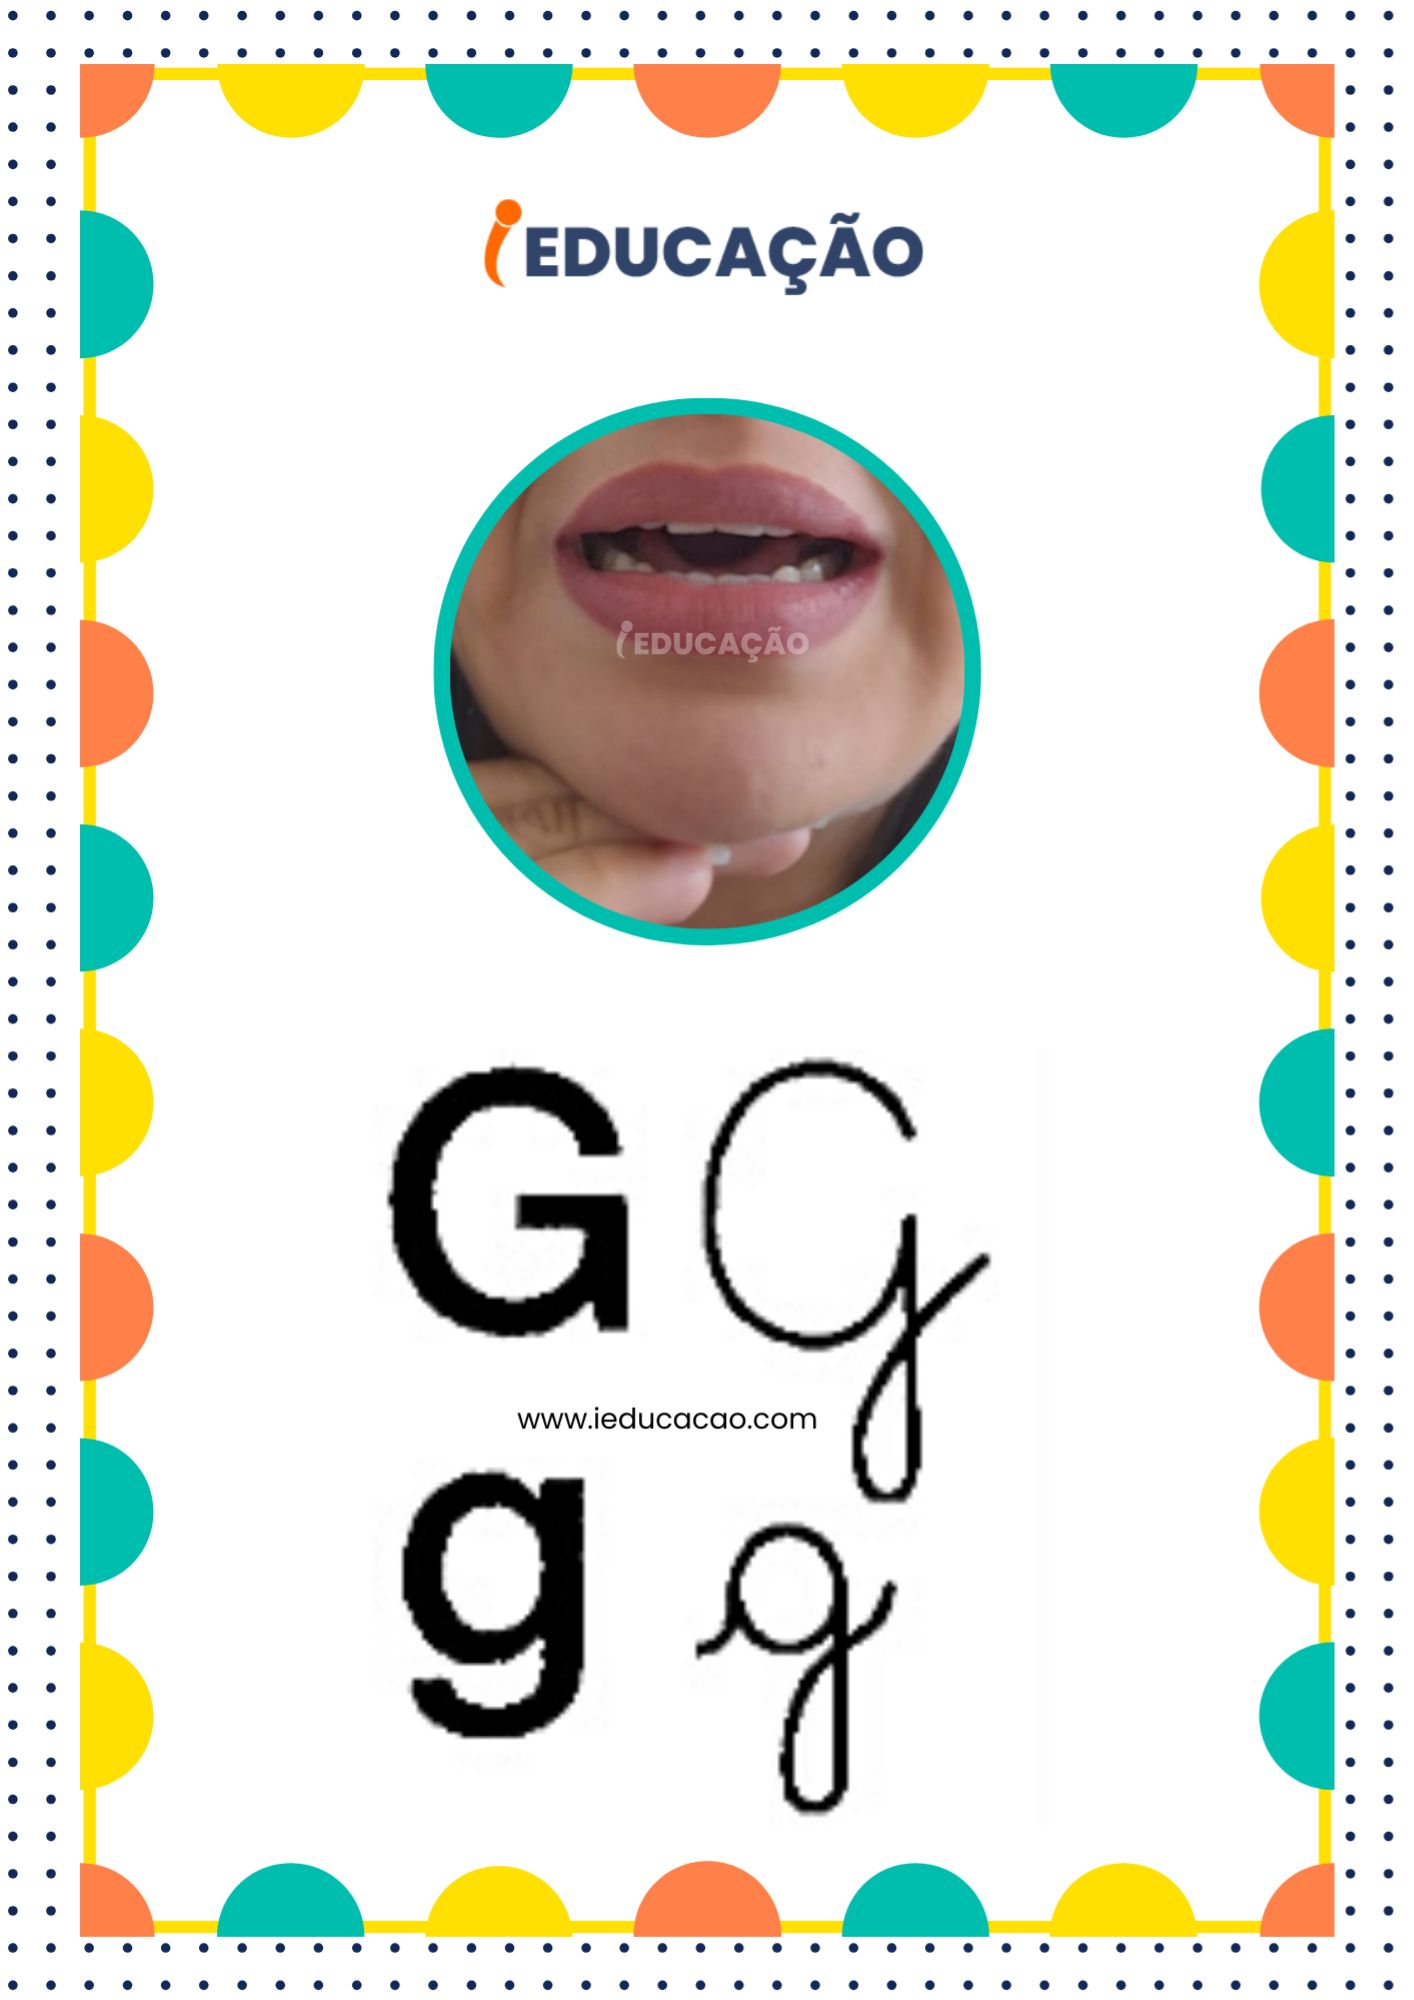 Letra G - Alfabeto Fônico com as letras do alfabeto - Consciência Fonológica